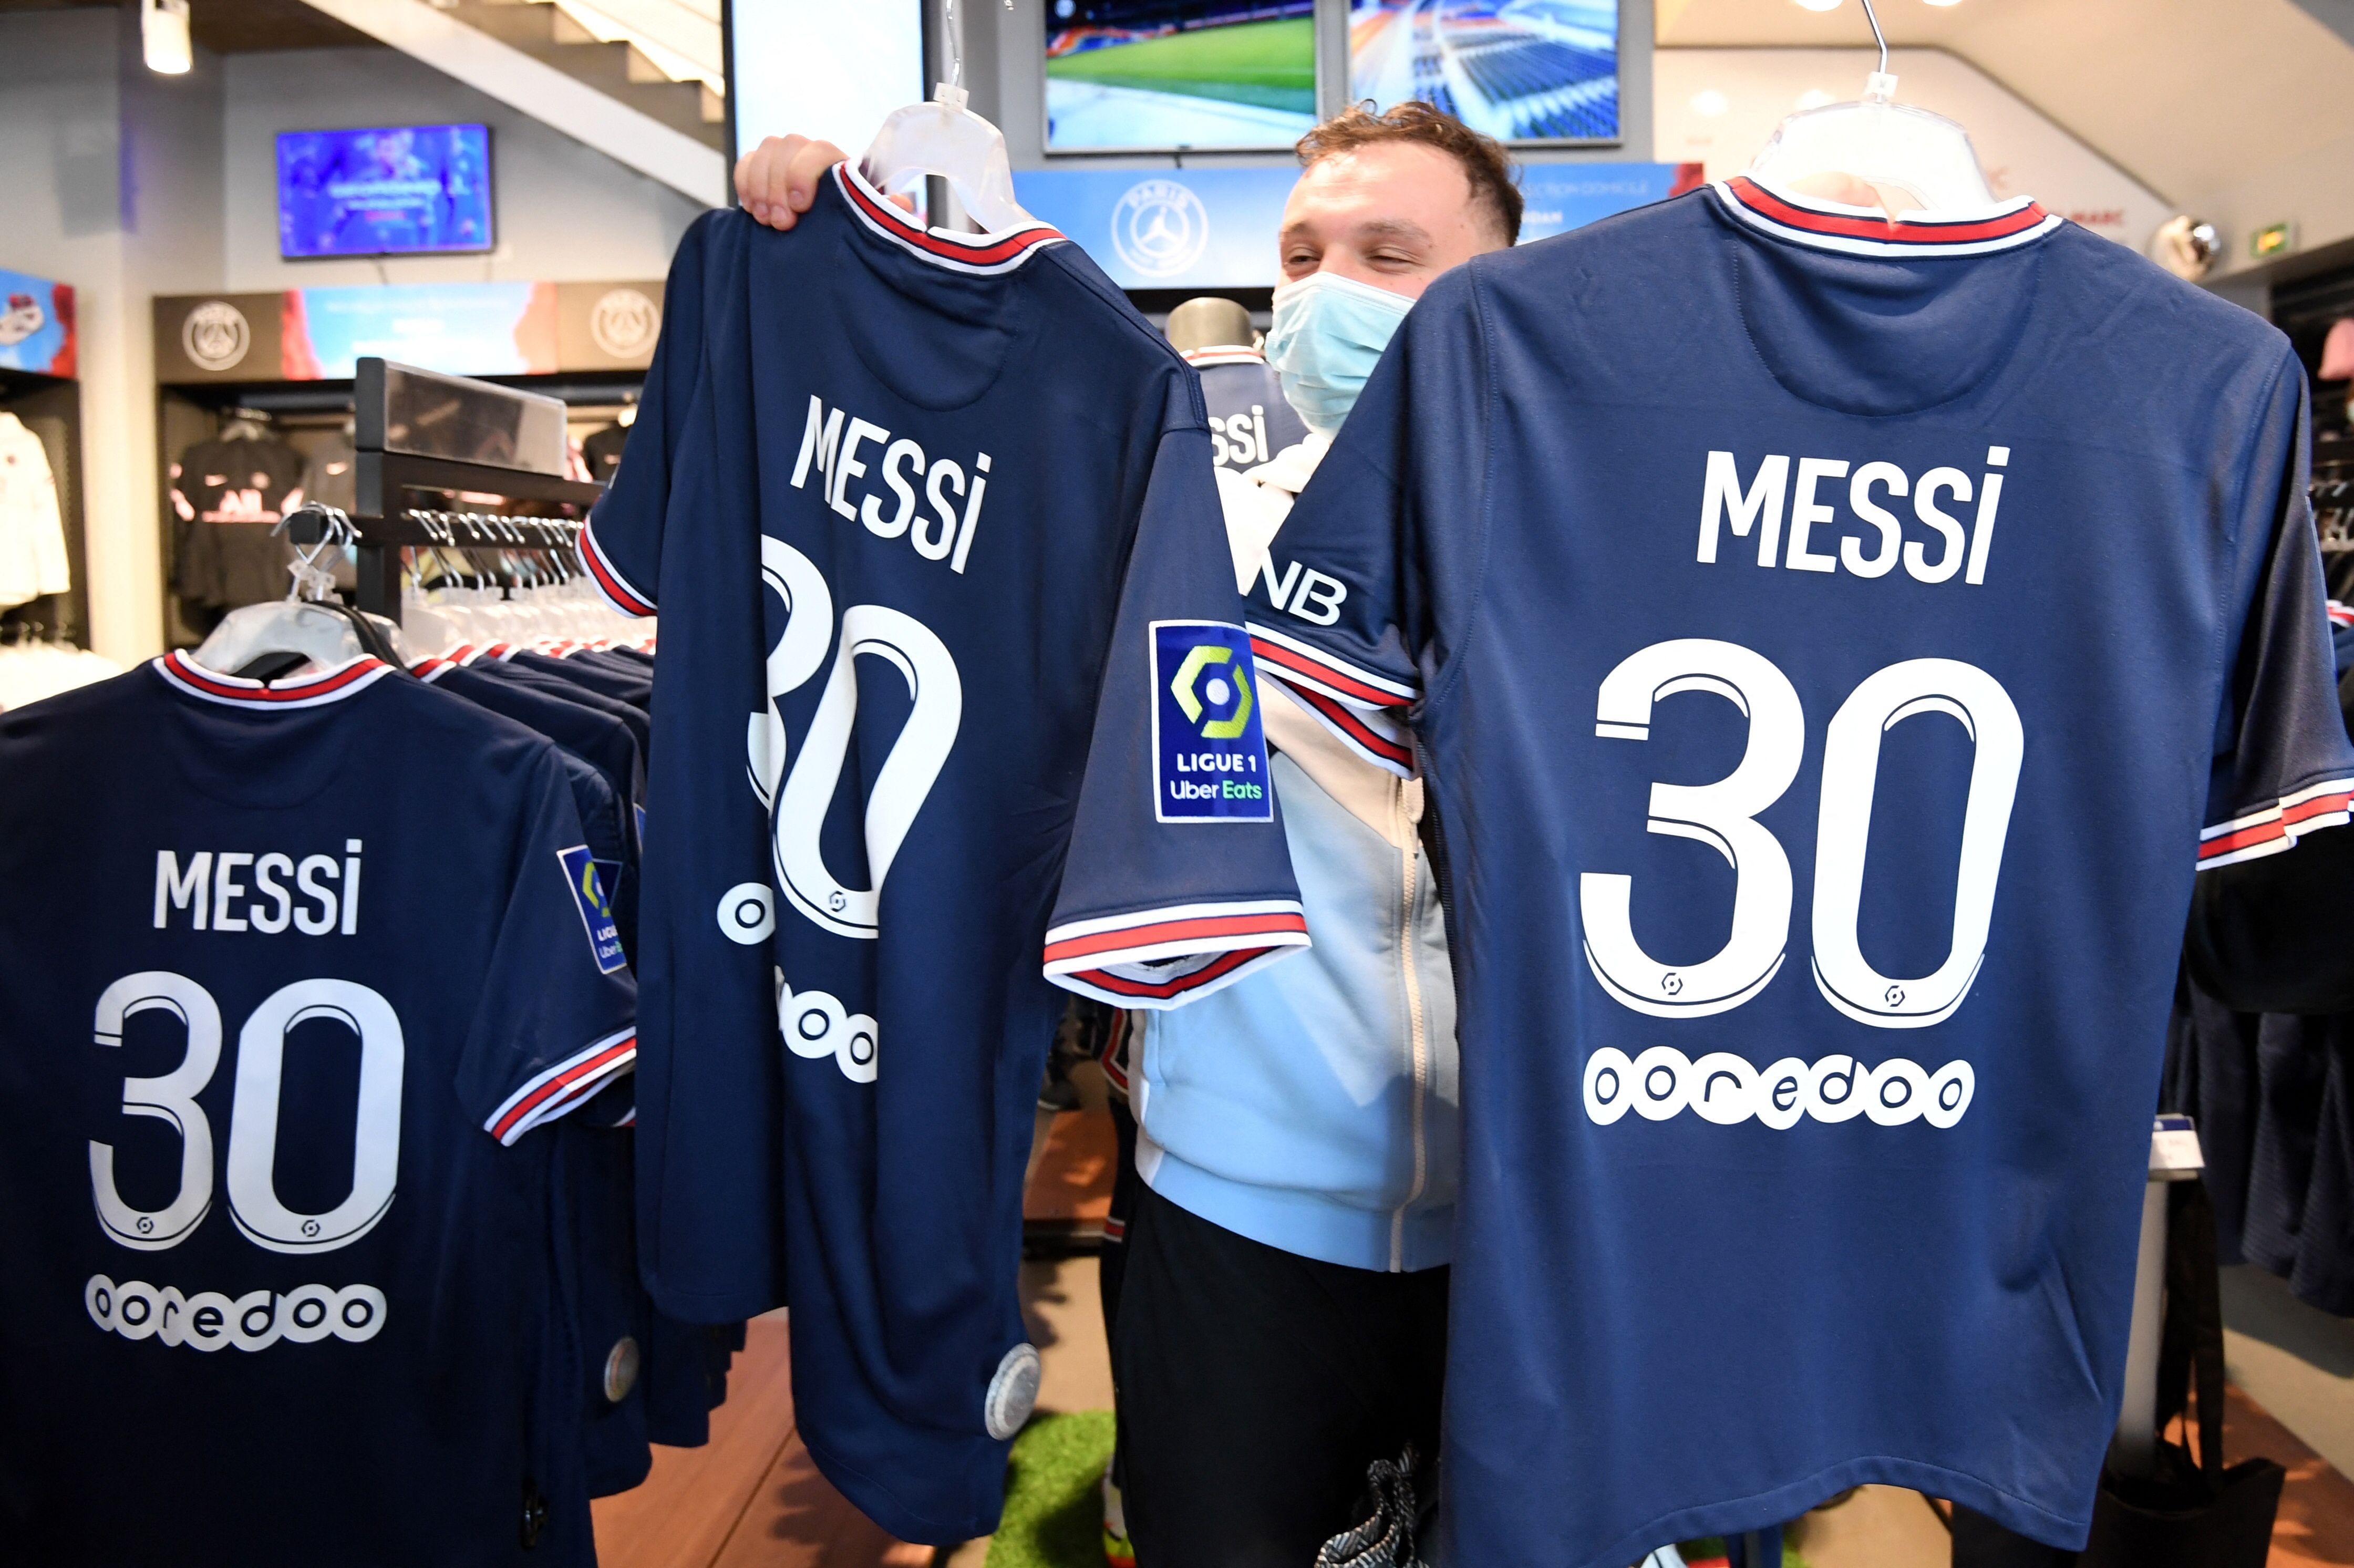 La ruée vers le maillot de Messi : Messi endossera le numéro 30